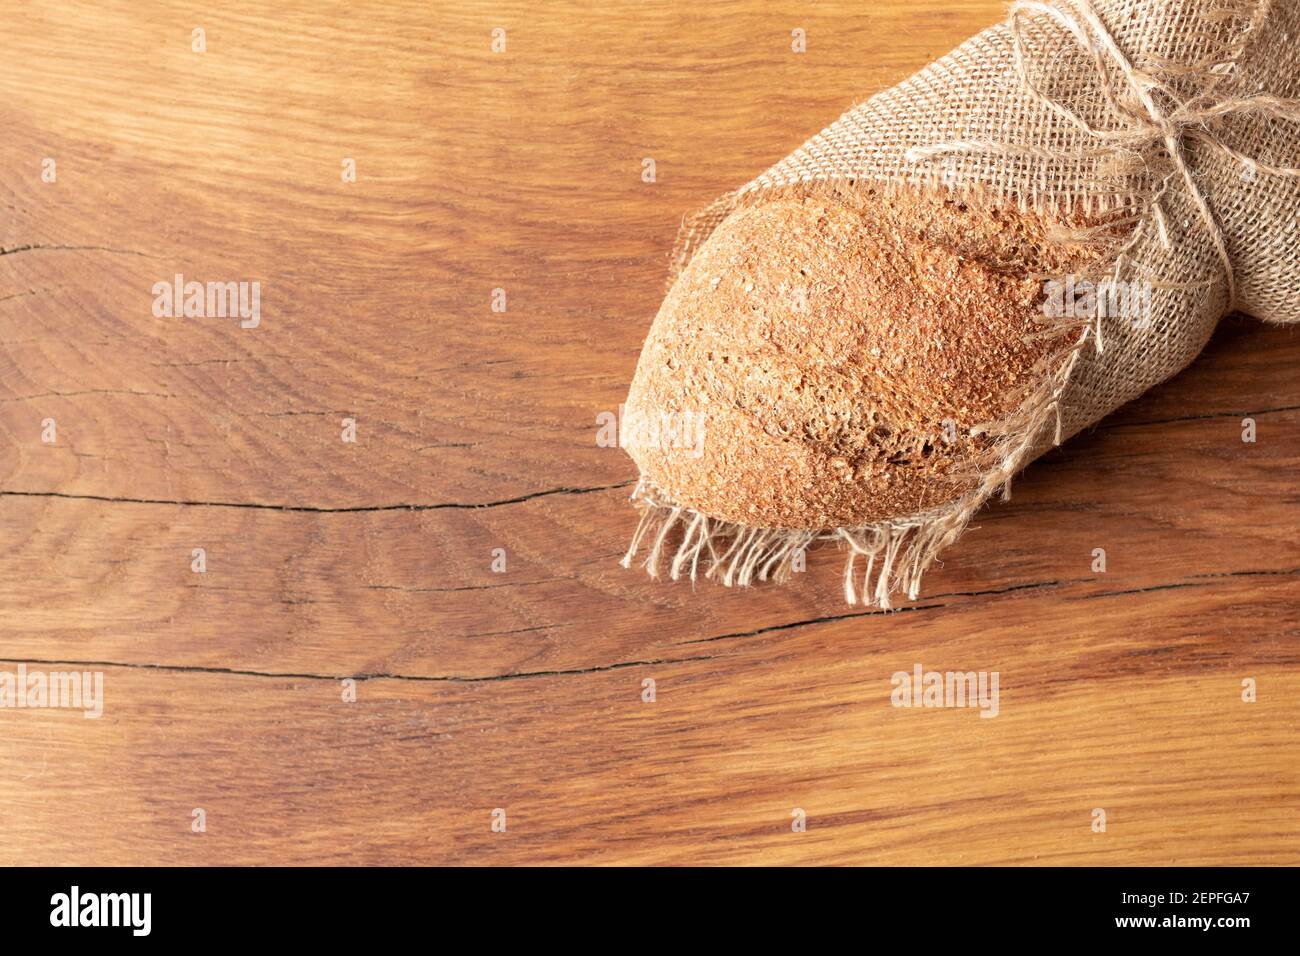 Pane fatto in casa appena sfornato con crusca su fondo di legno e burlap e con un salice sprig. Foodphoto. Foto di alta qualità Foto Stock